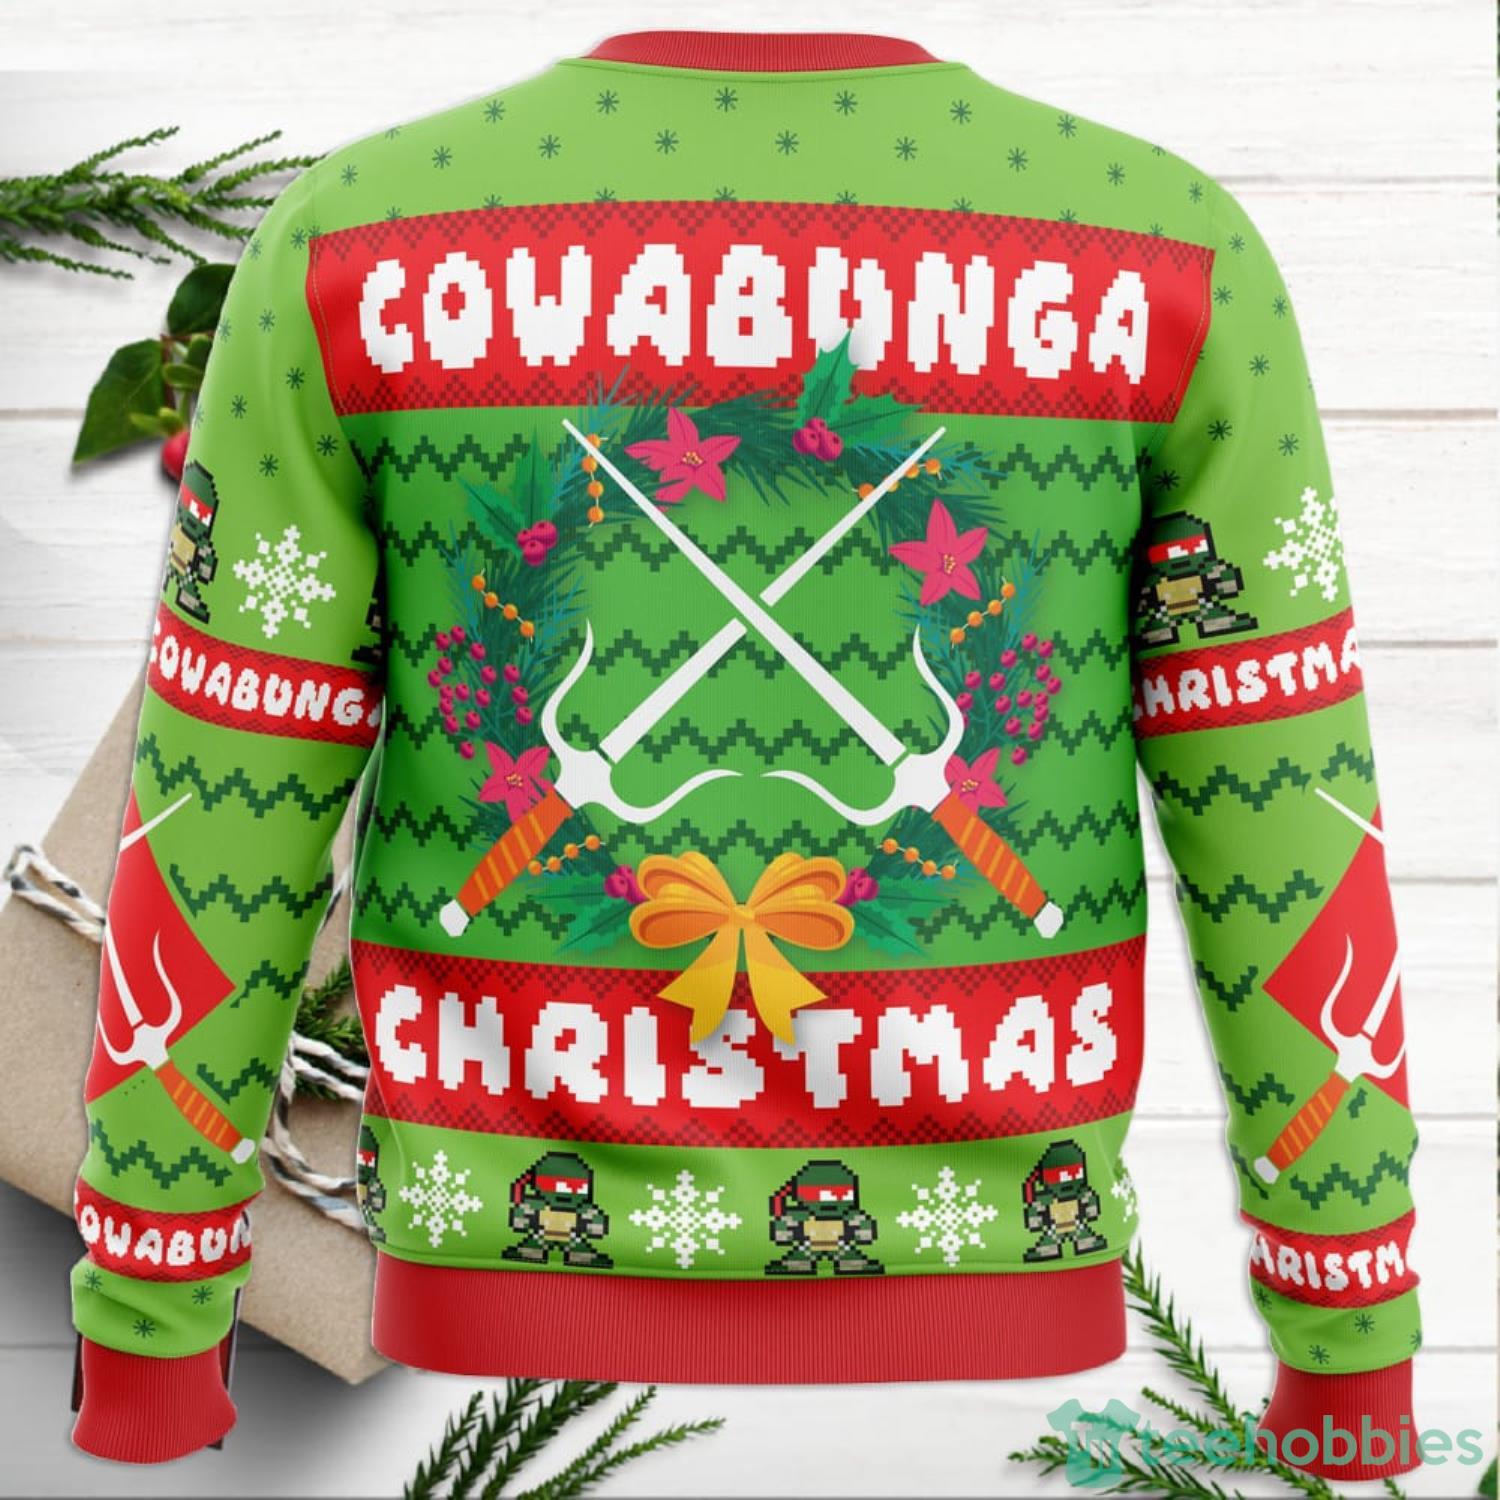 Cowabunga Michaelangelo Christmas Teenage Mutant Ninja Turtles Ugly Christmas  Sweater - Anime Ape